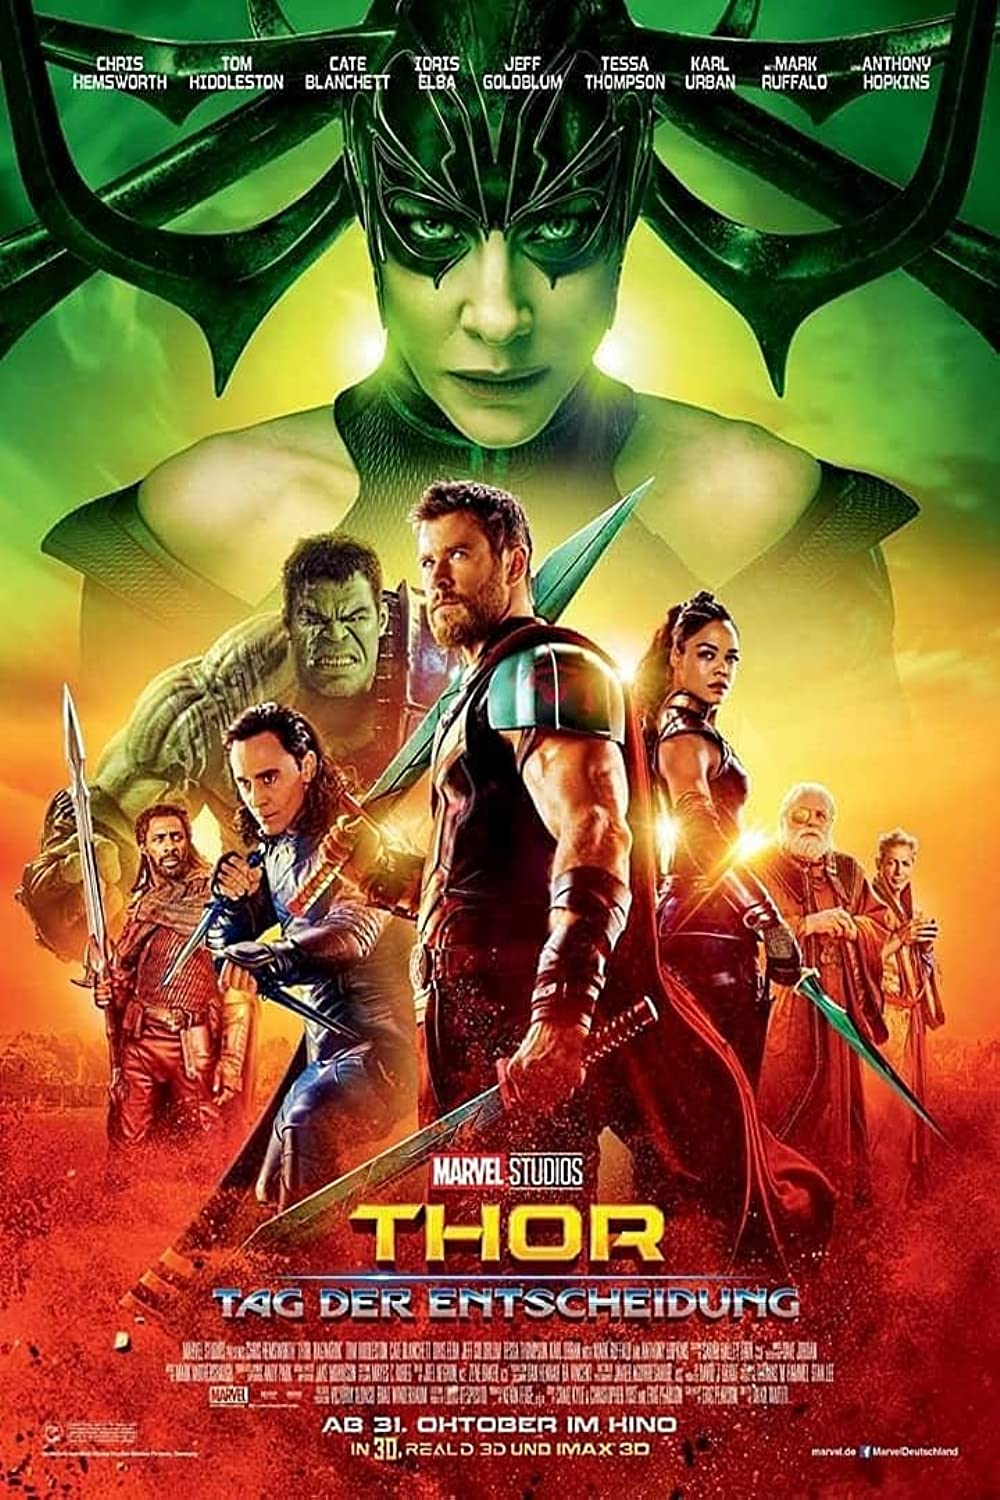 Filmbeschreibung zu Thor: Tag der Entscheidung